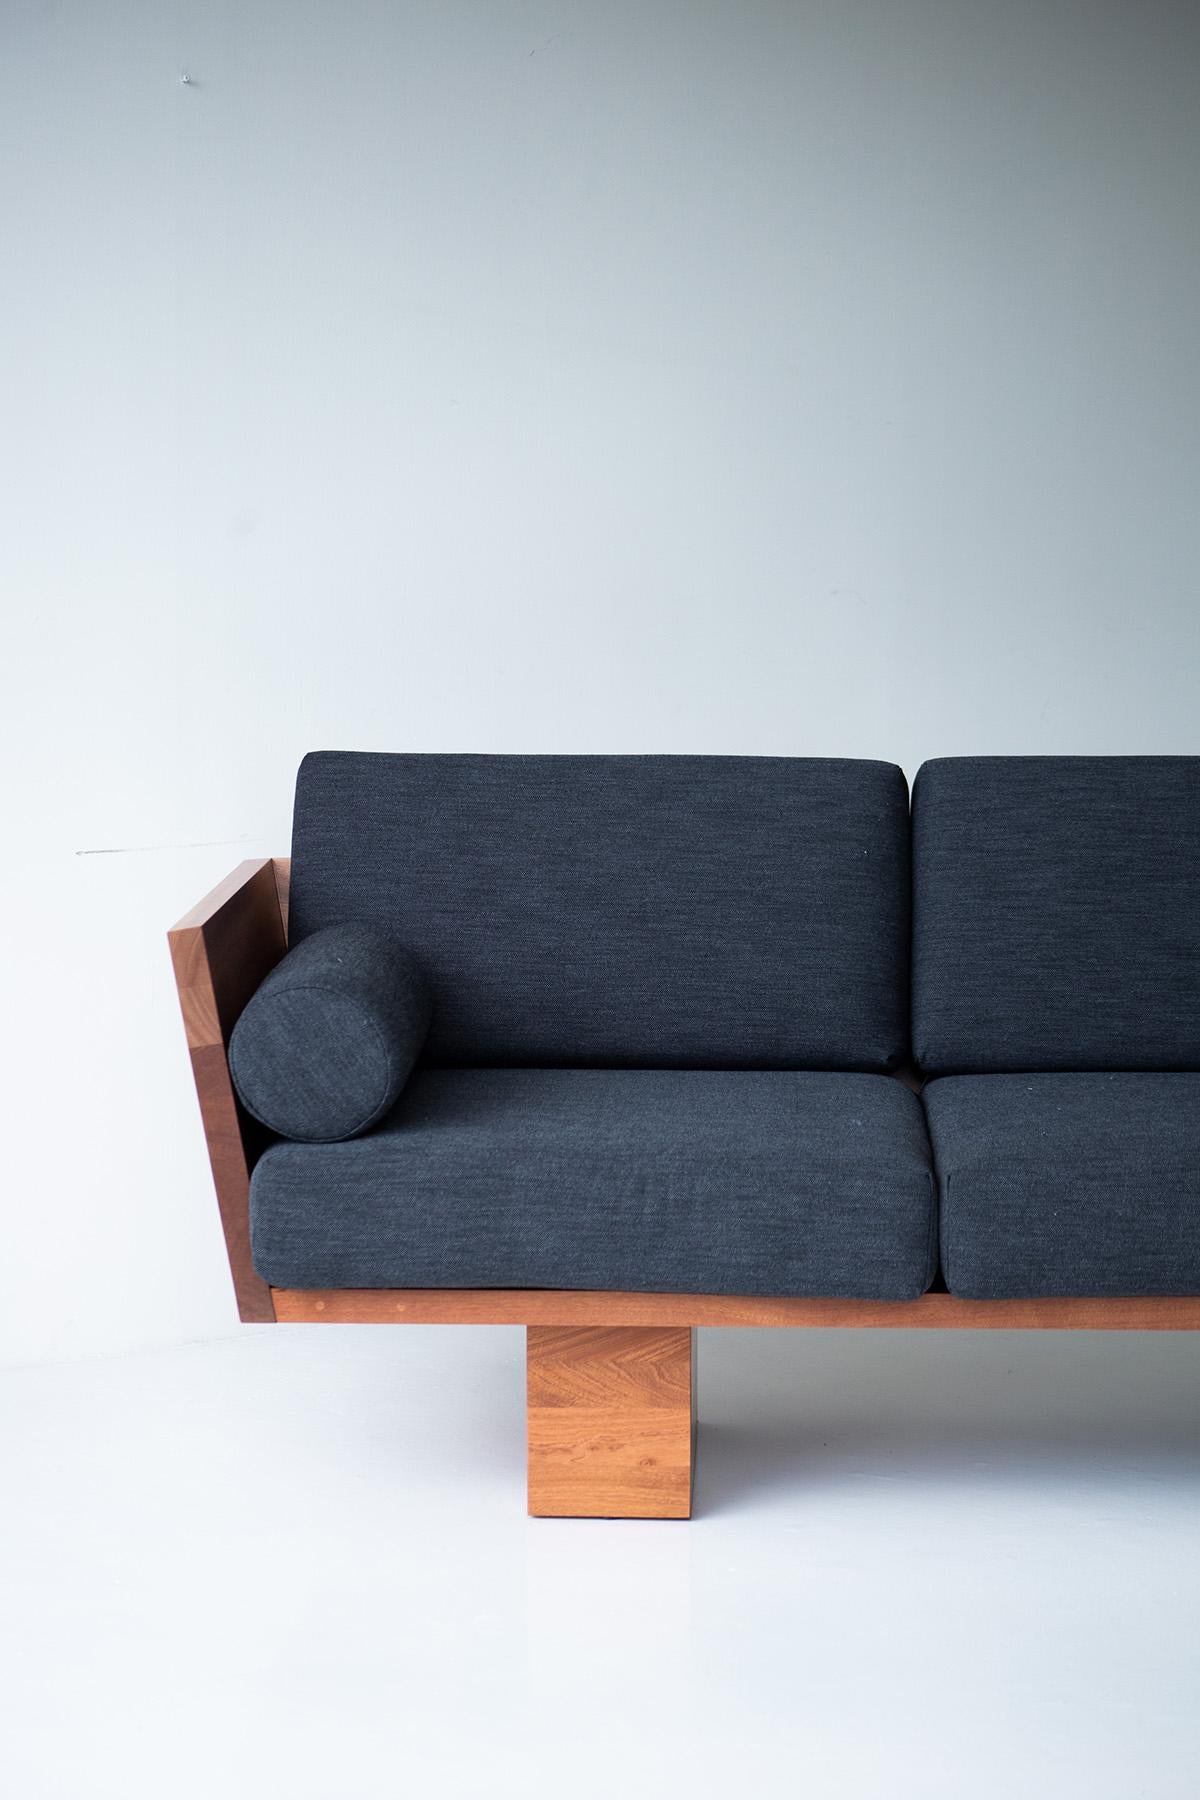 Ce canapé d'extérieur moderne Suelo est magnifiquement construit en bois massif dans l'Ohio, aux États-Unis. La silhouette de ce canapé est simple, moderne et élégante, avec des coussins de siège et de dossier confortables. Le cadre en bois est